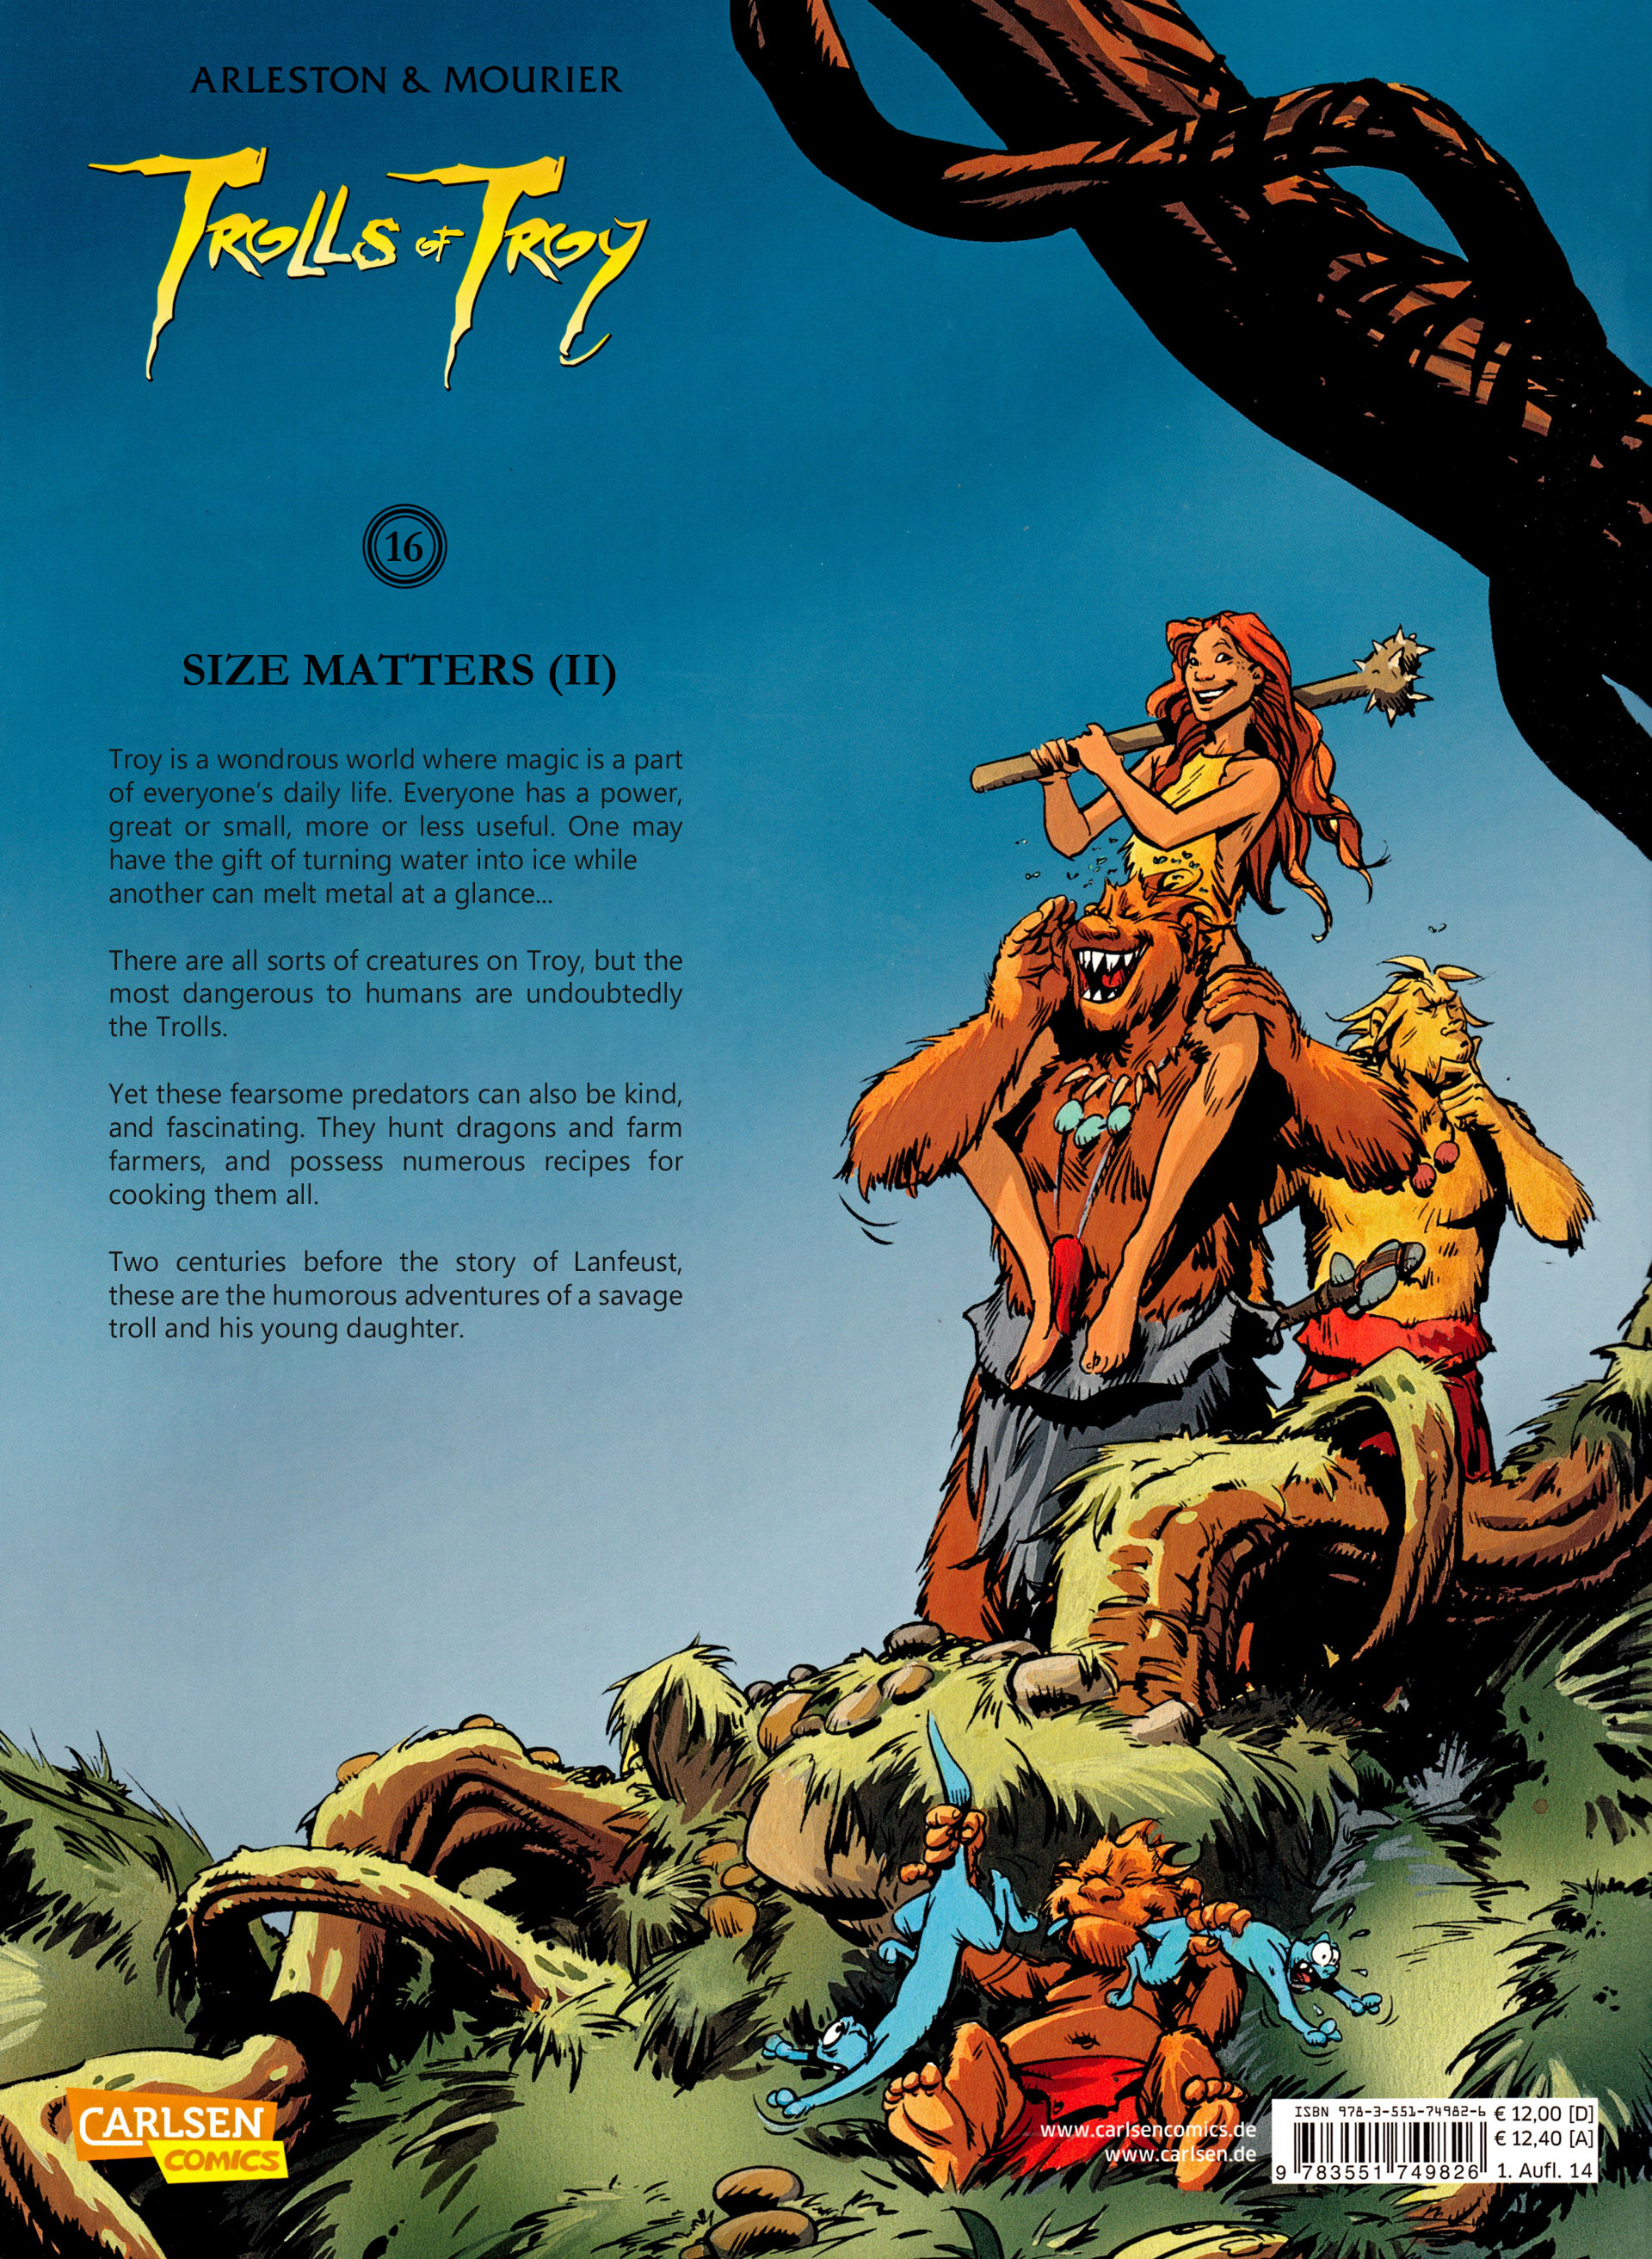 Read online Trolls of Troy comic -  Issue #16 - 49